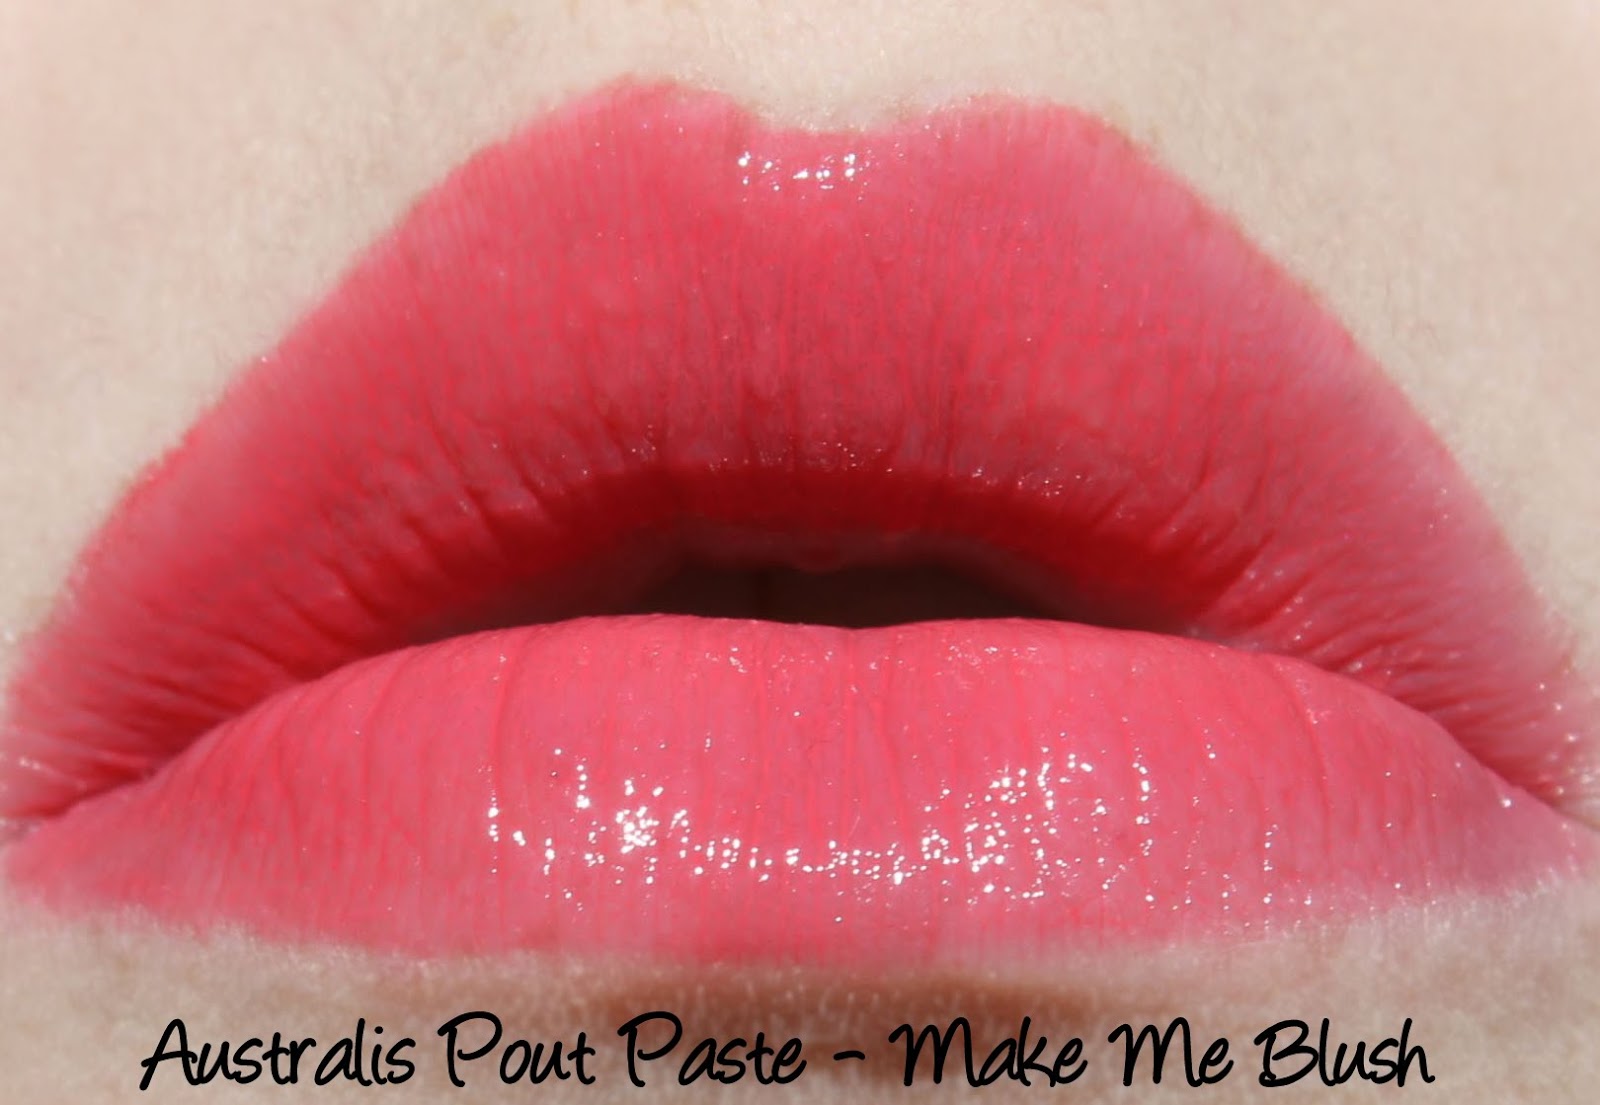 Australis Pout Paste - Make Me Blush Swatches & Review